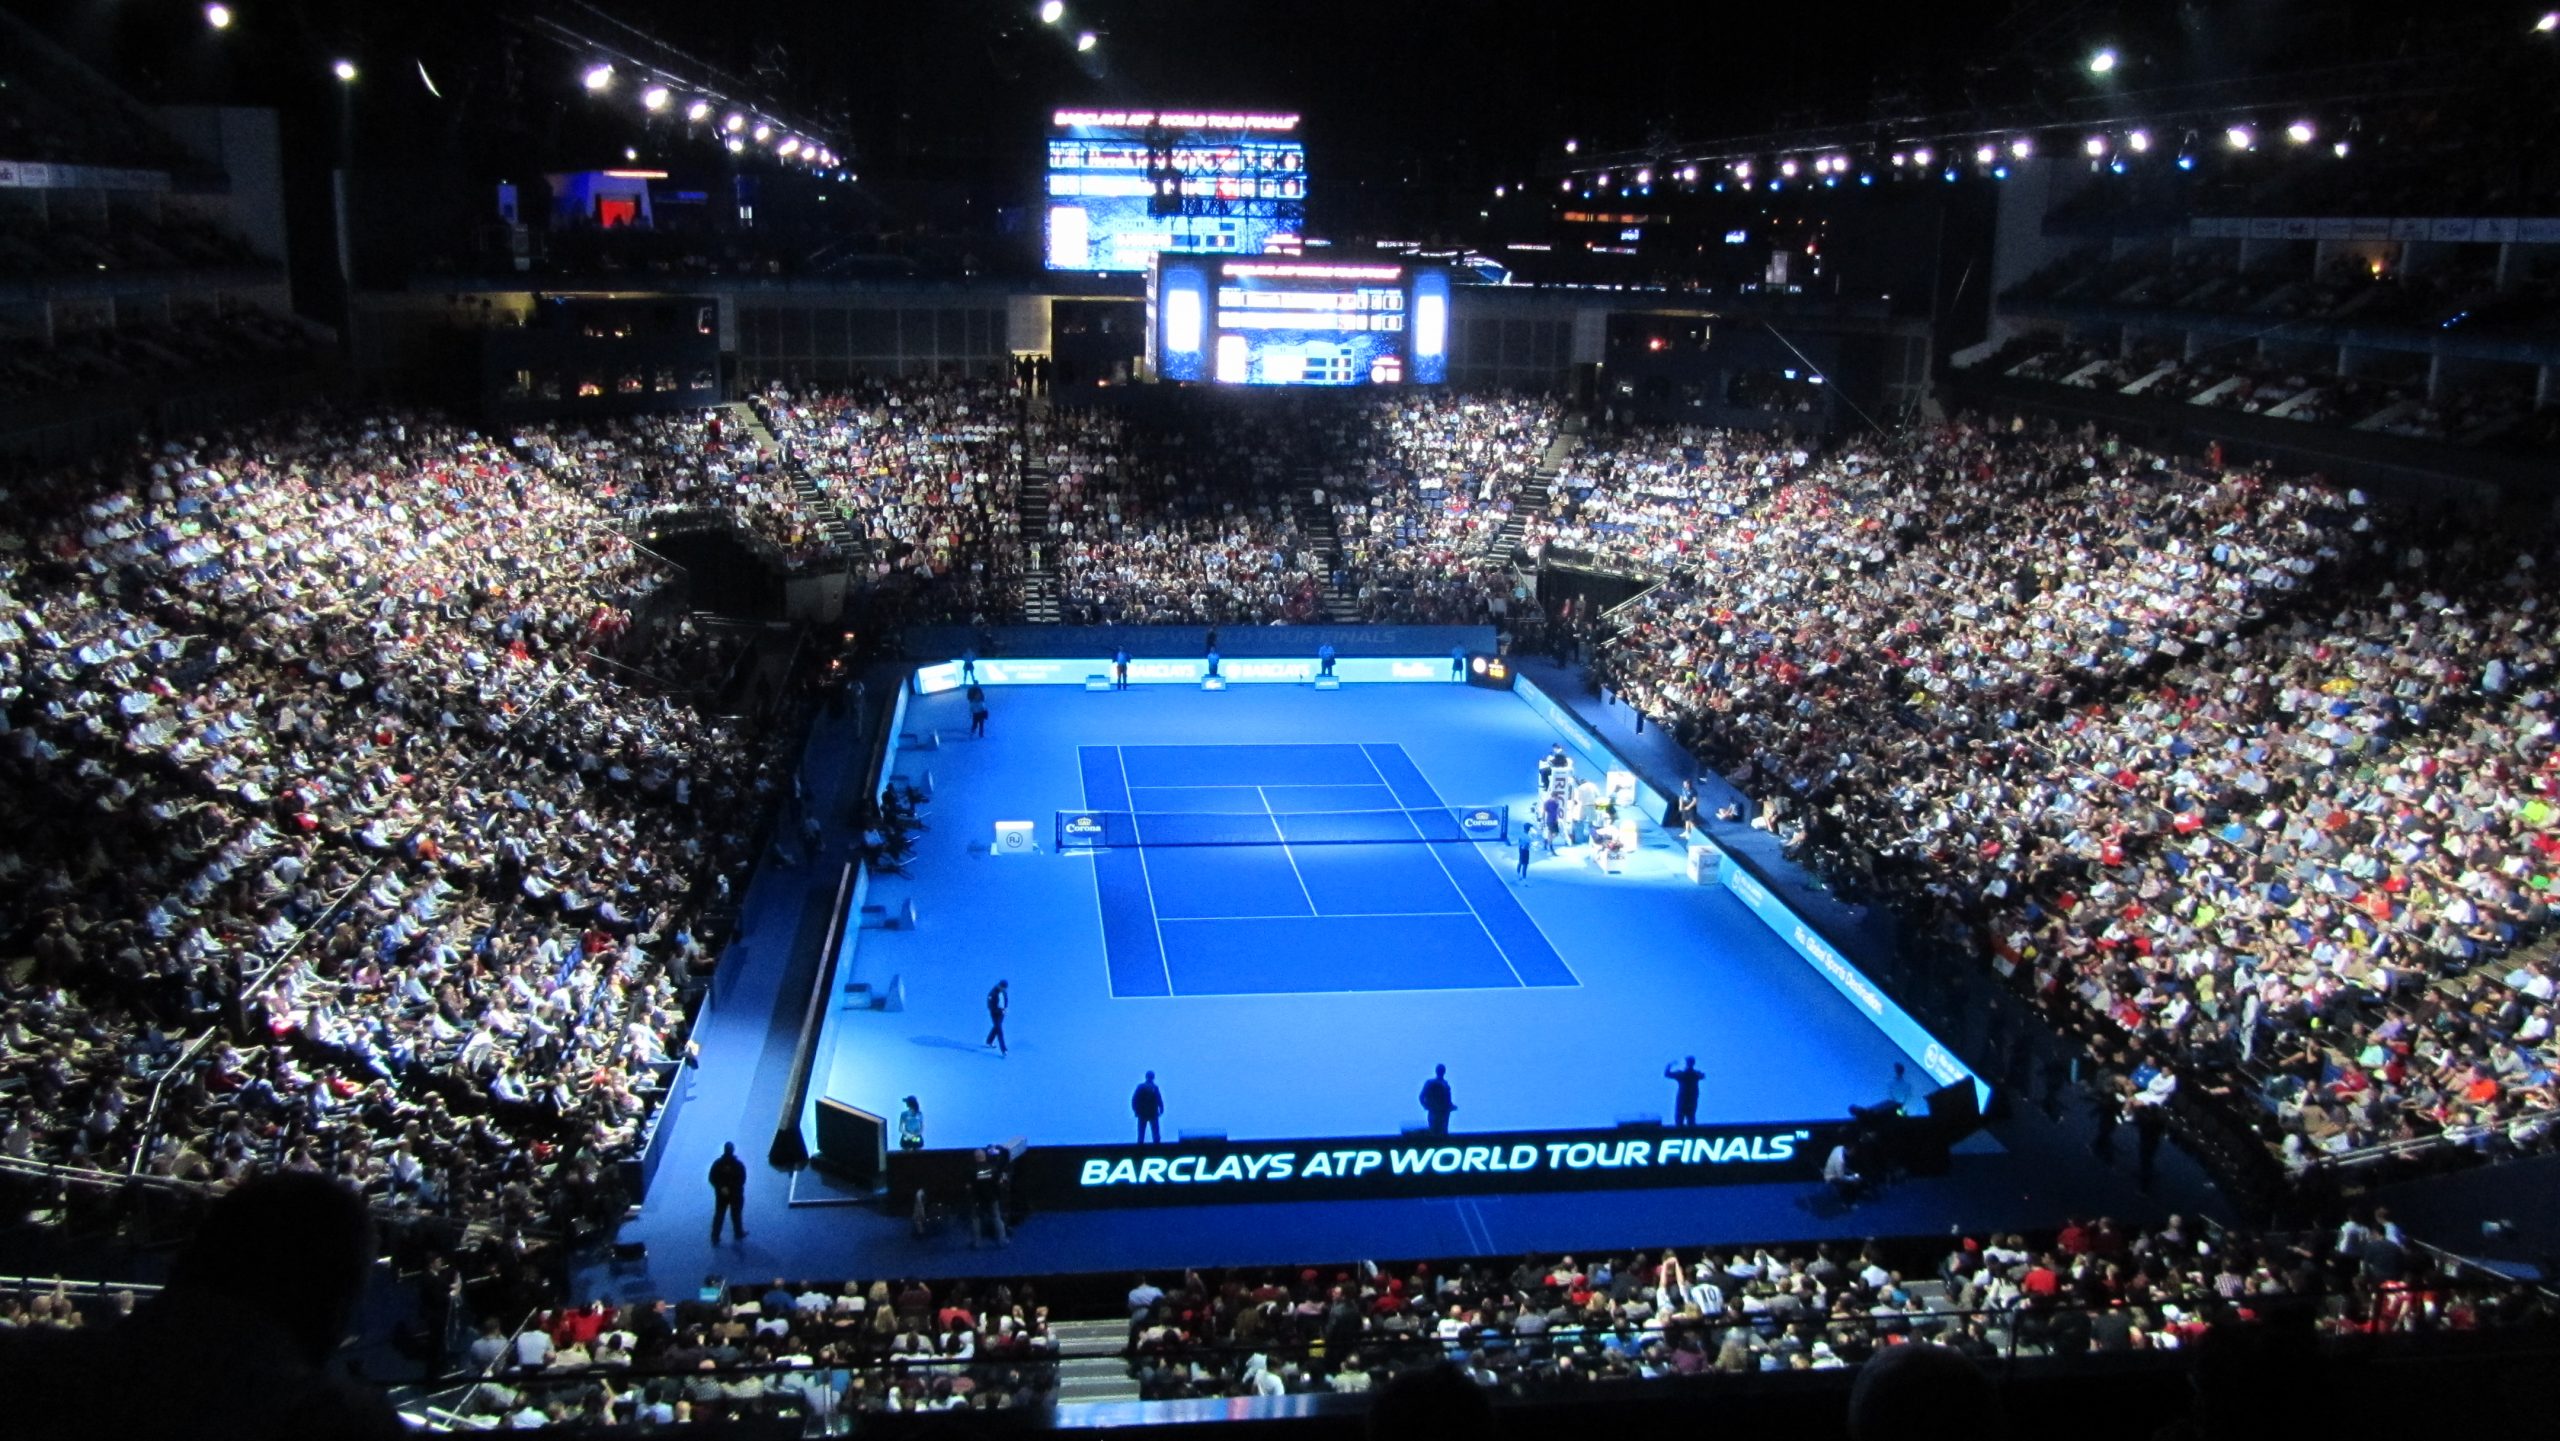 Circuit ATP: Les tournois survivants de la saison